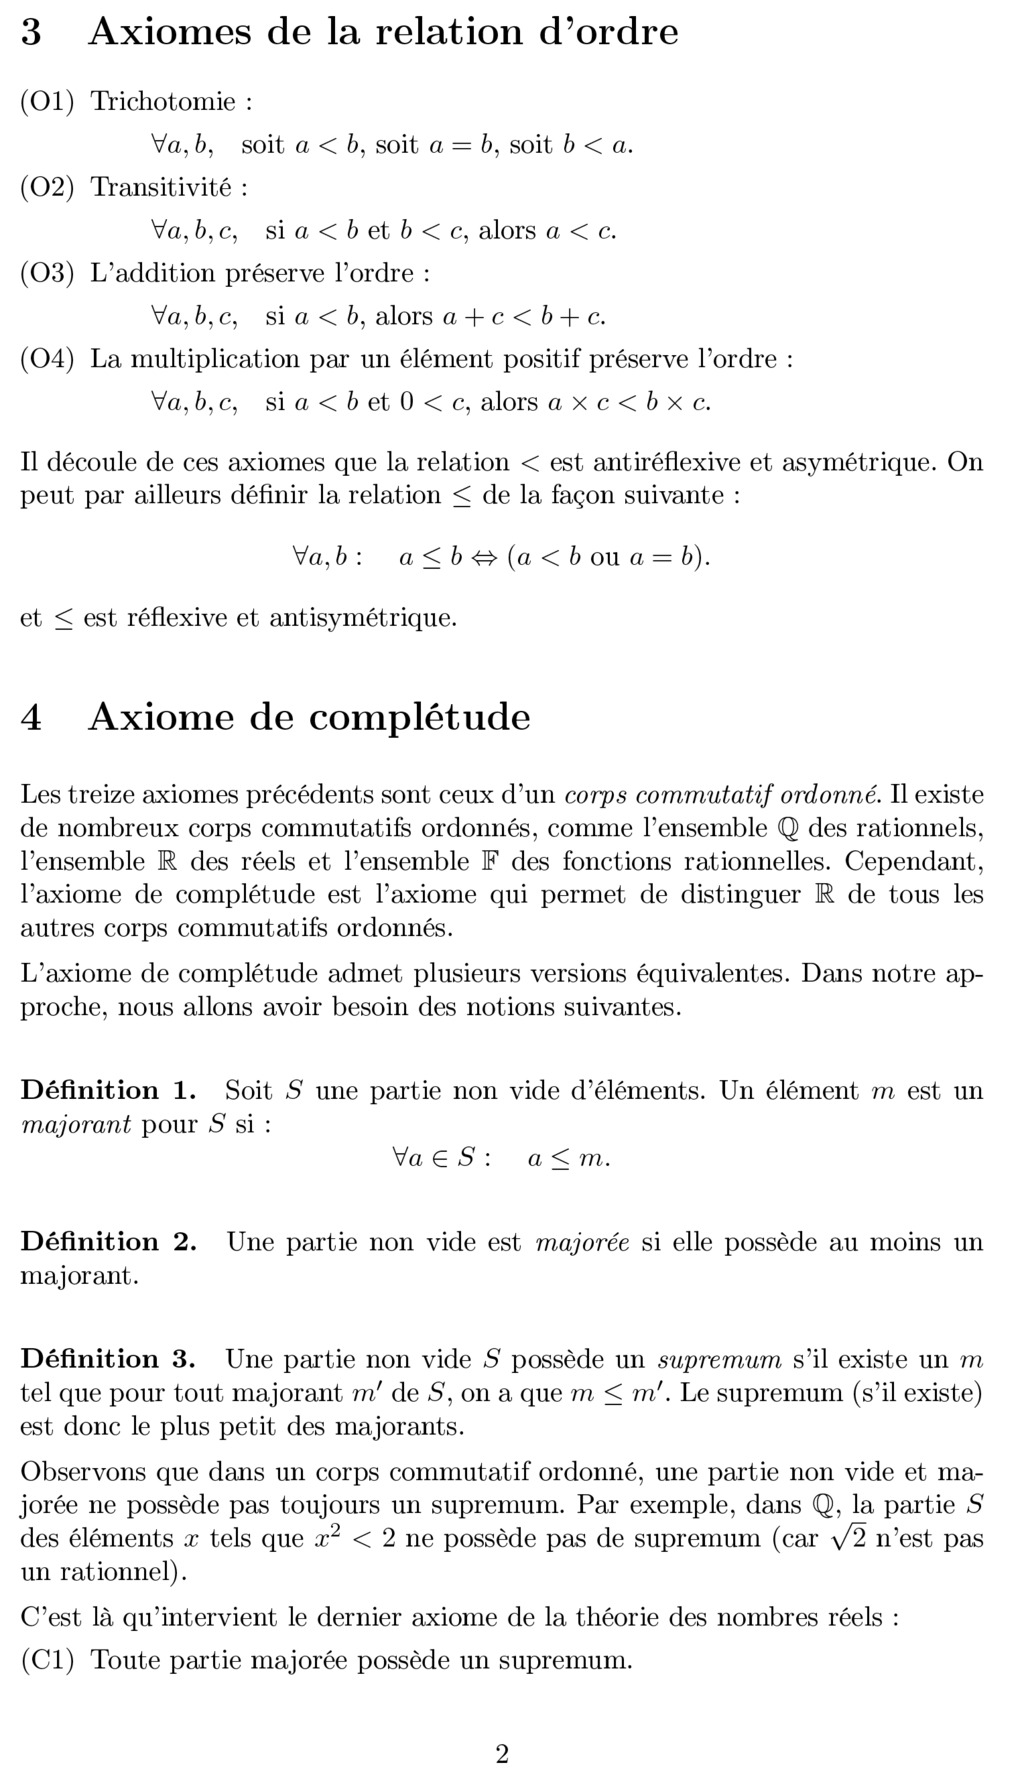 Le paradoxe de la dichotomie de Zénon - Page 8 Axiome10